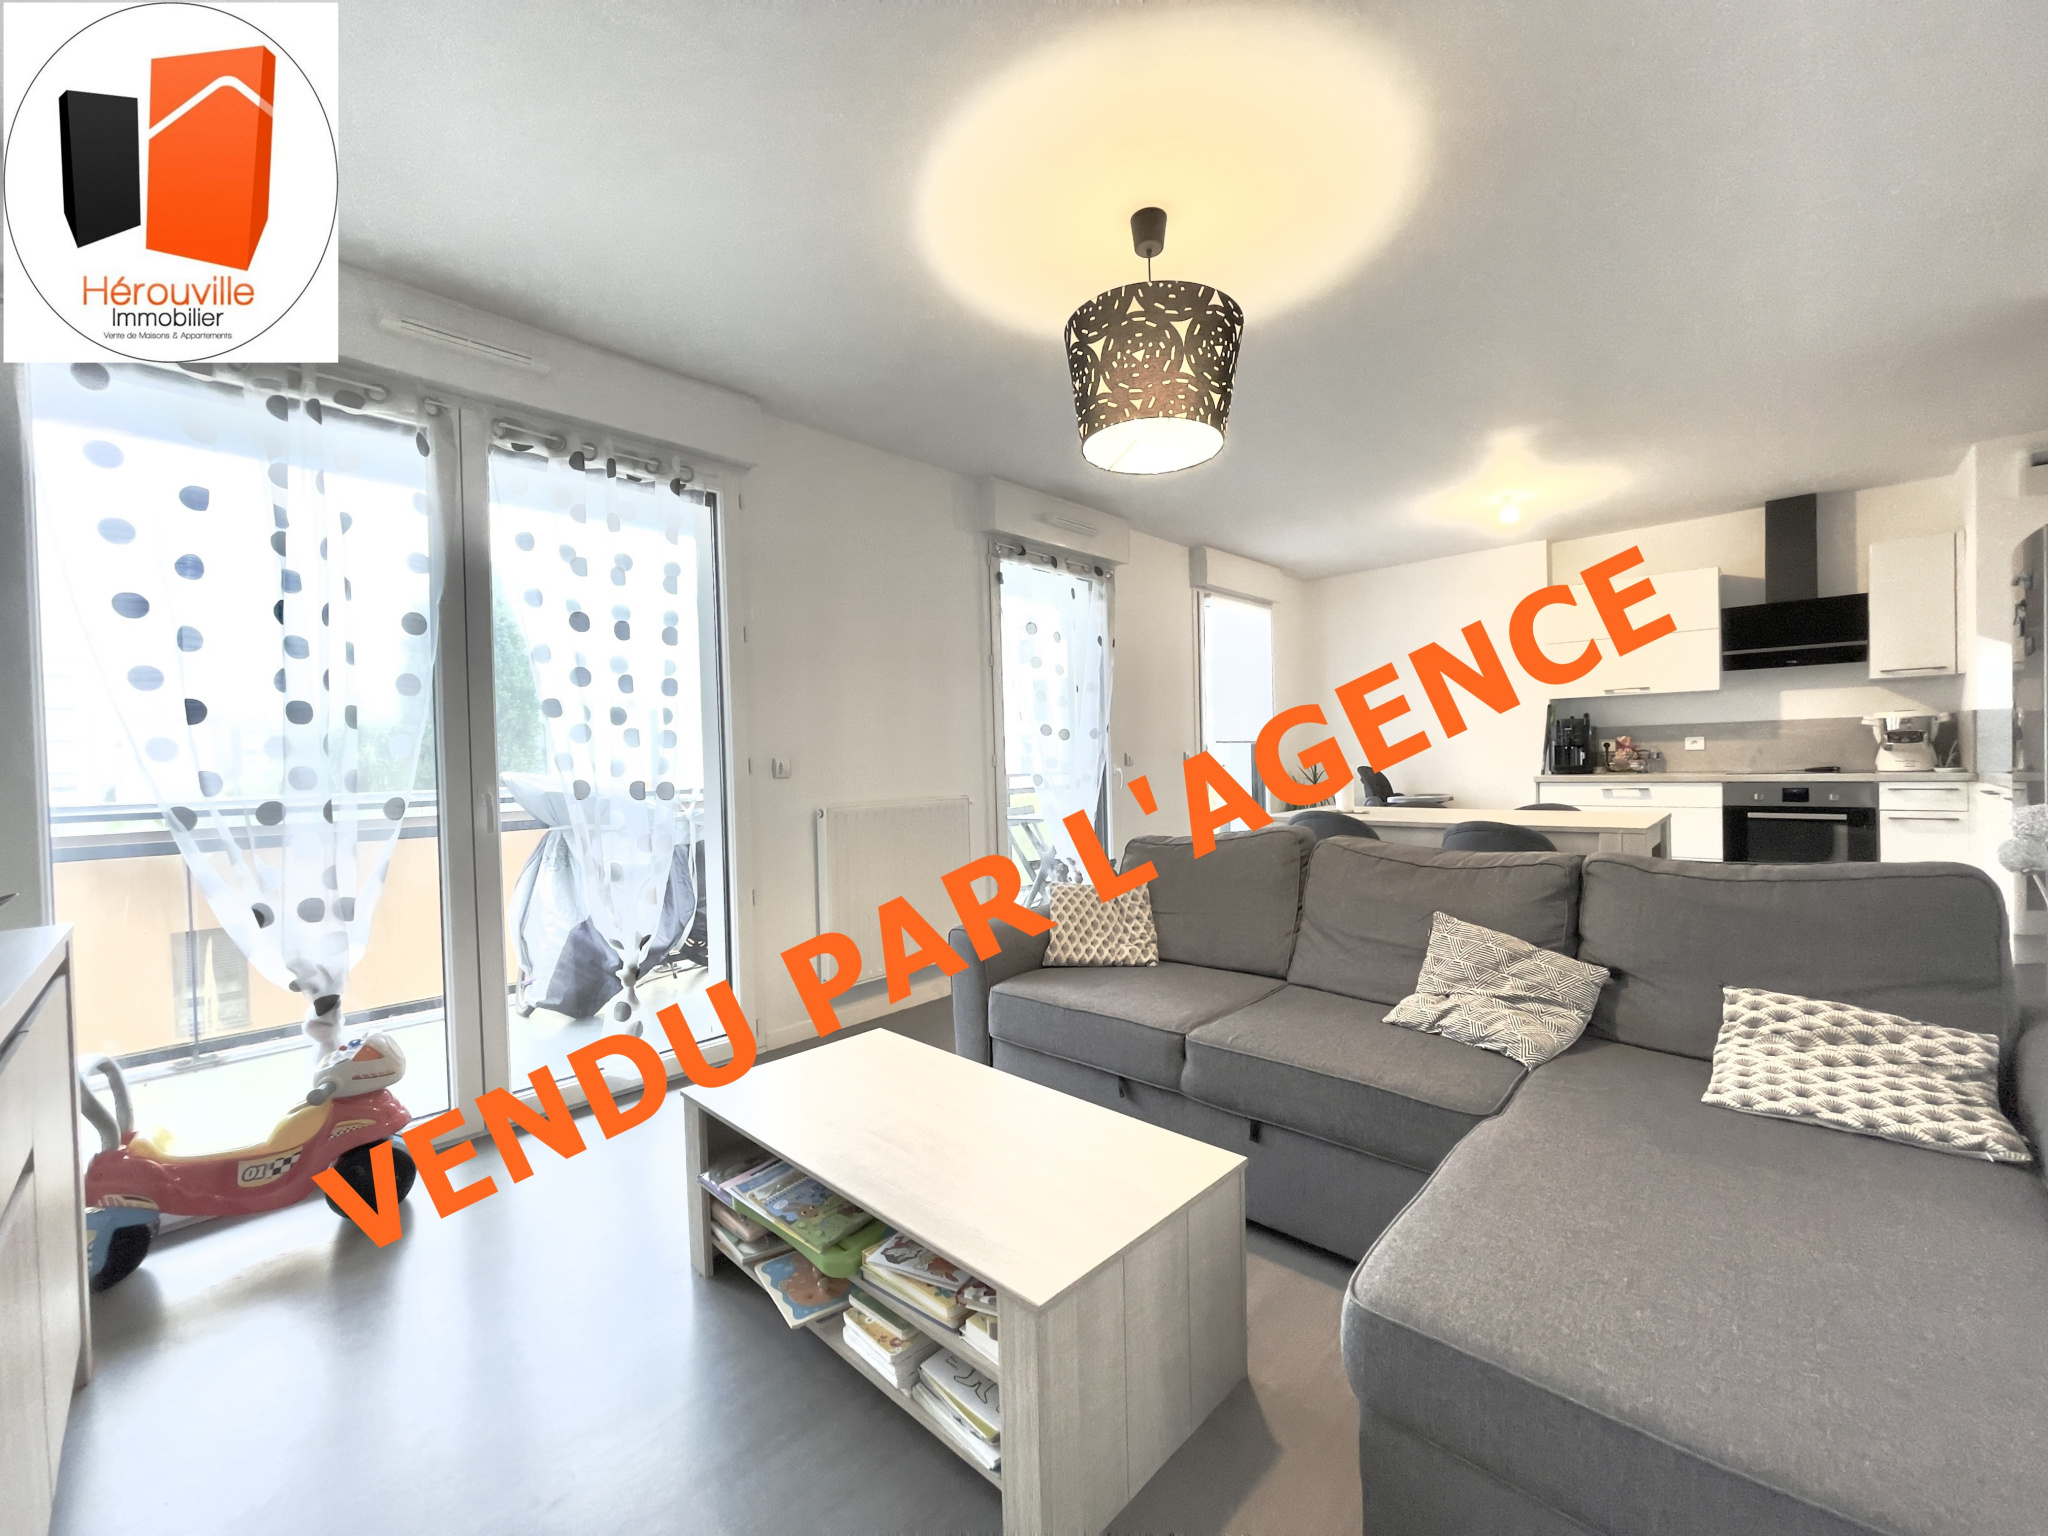 Vente Appartement 64m² 3 Pièces à Hérouville-Saint-Clair (14200) - Herouville Immobilier